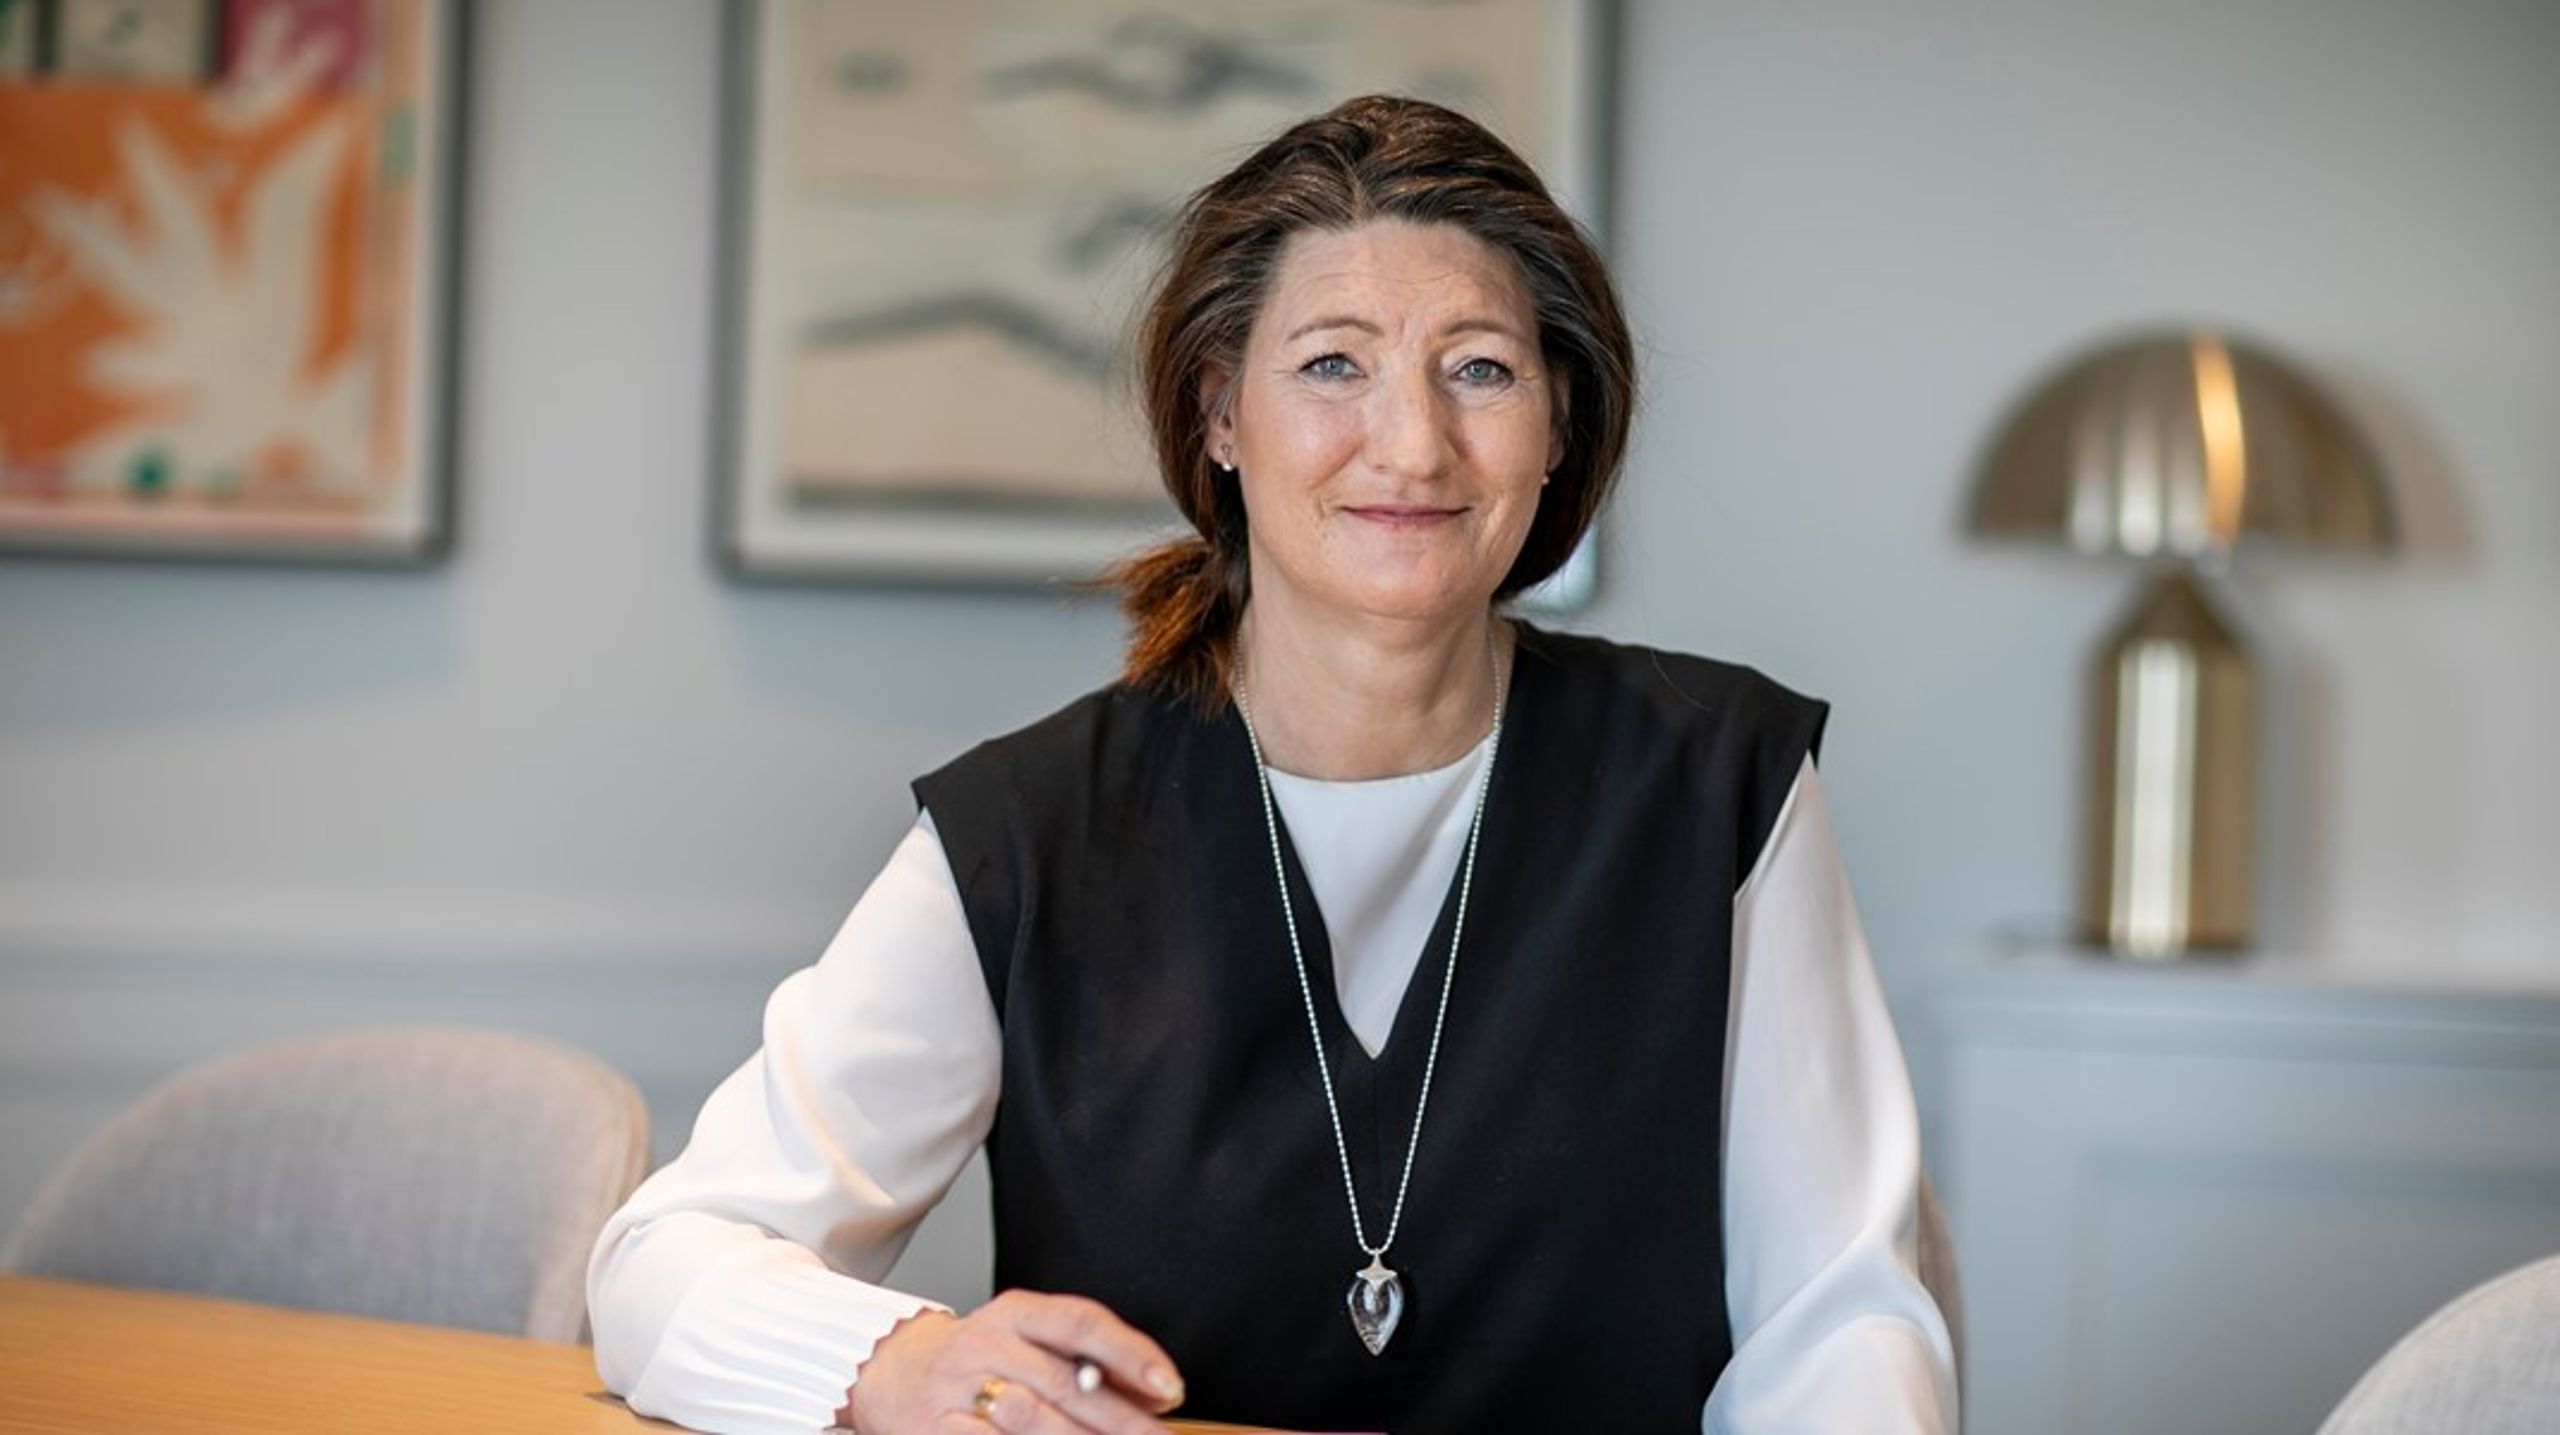 Susanna Gideonsson valdes till ny ordförande efter Karl-Petter Thorwaldsson på LO-kongressen 2020.